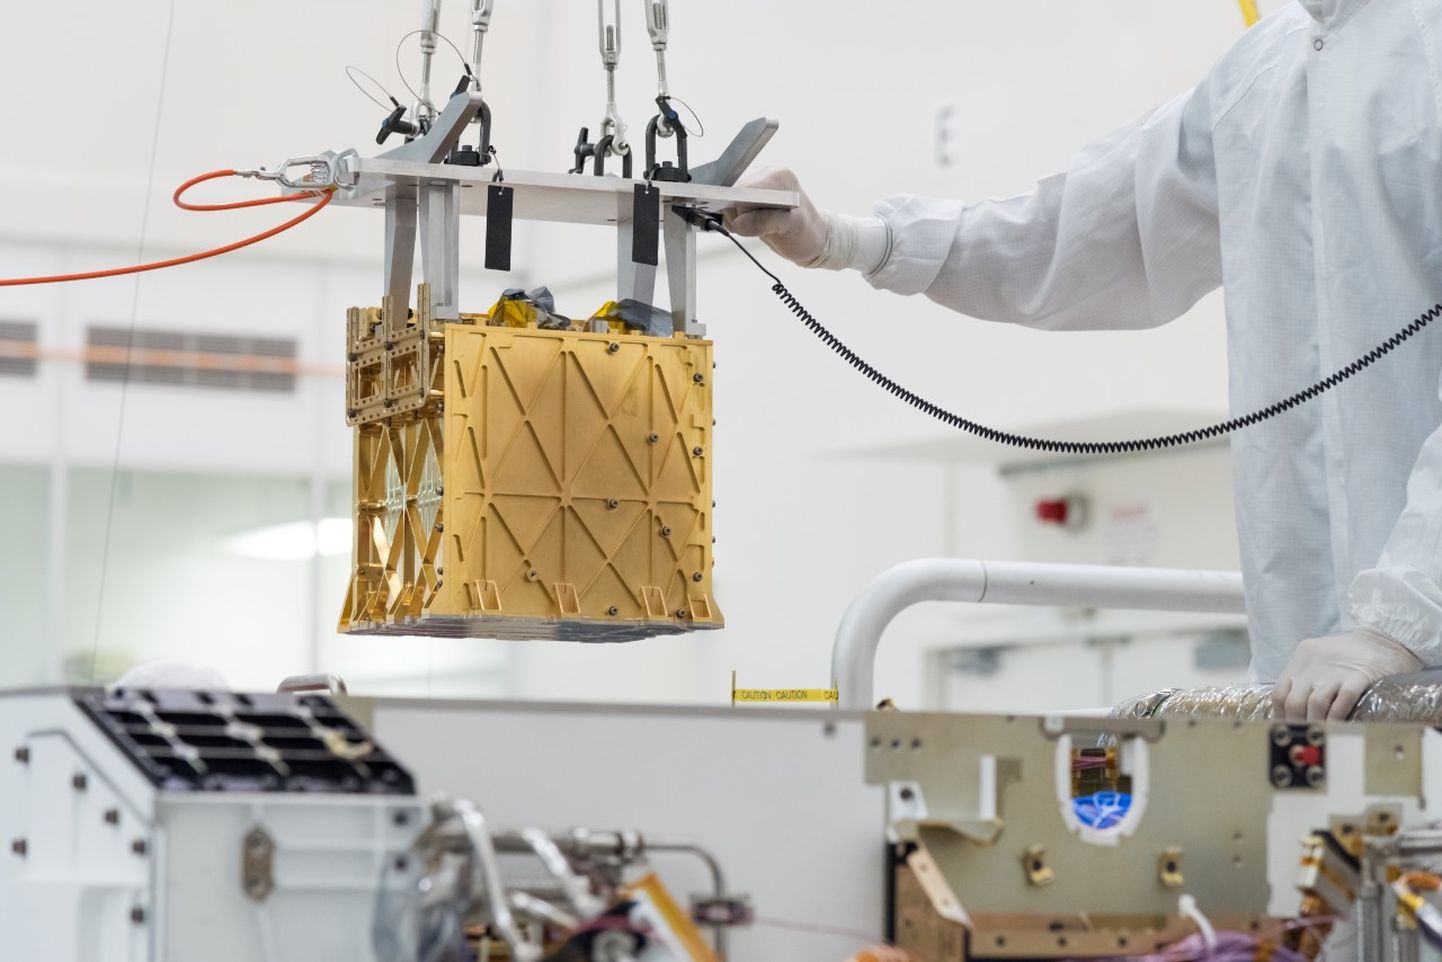 Марсоход Perseverance успешно испытал прибор для добычи кислорода из марсианской атмосферы.